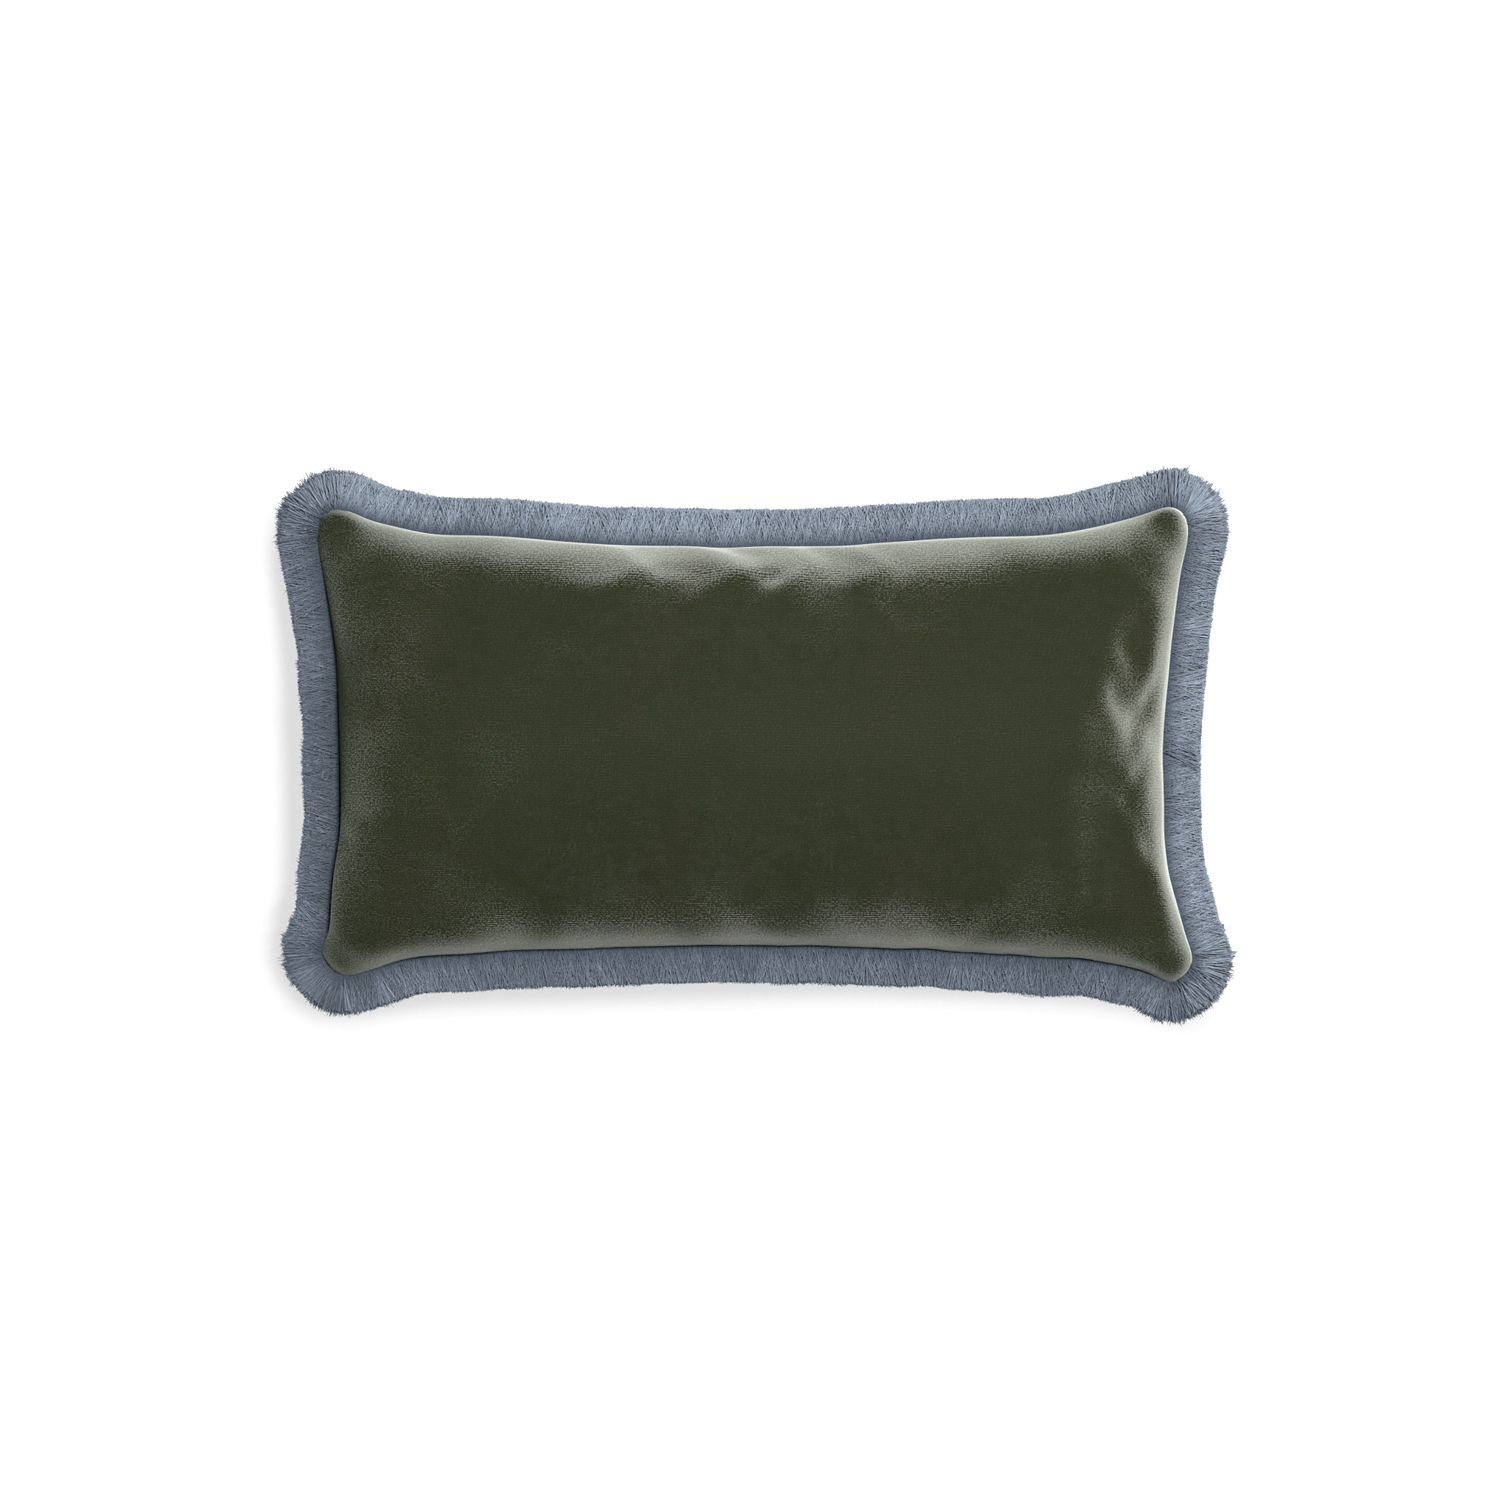 rectangle fern green velvet pillow with sky blue fringe